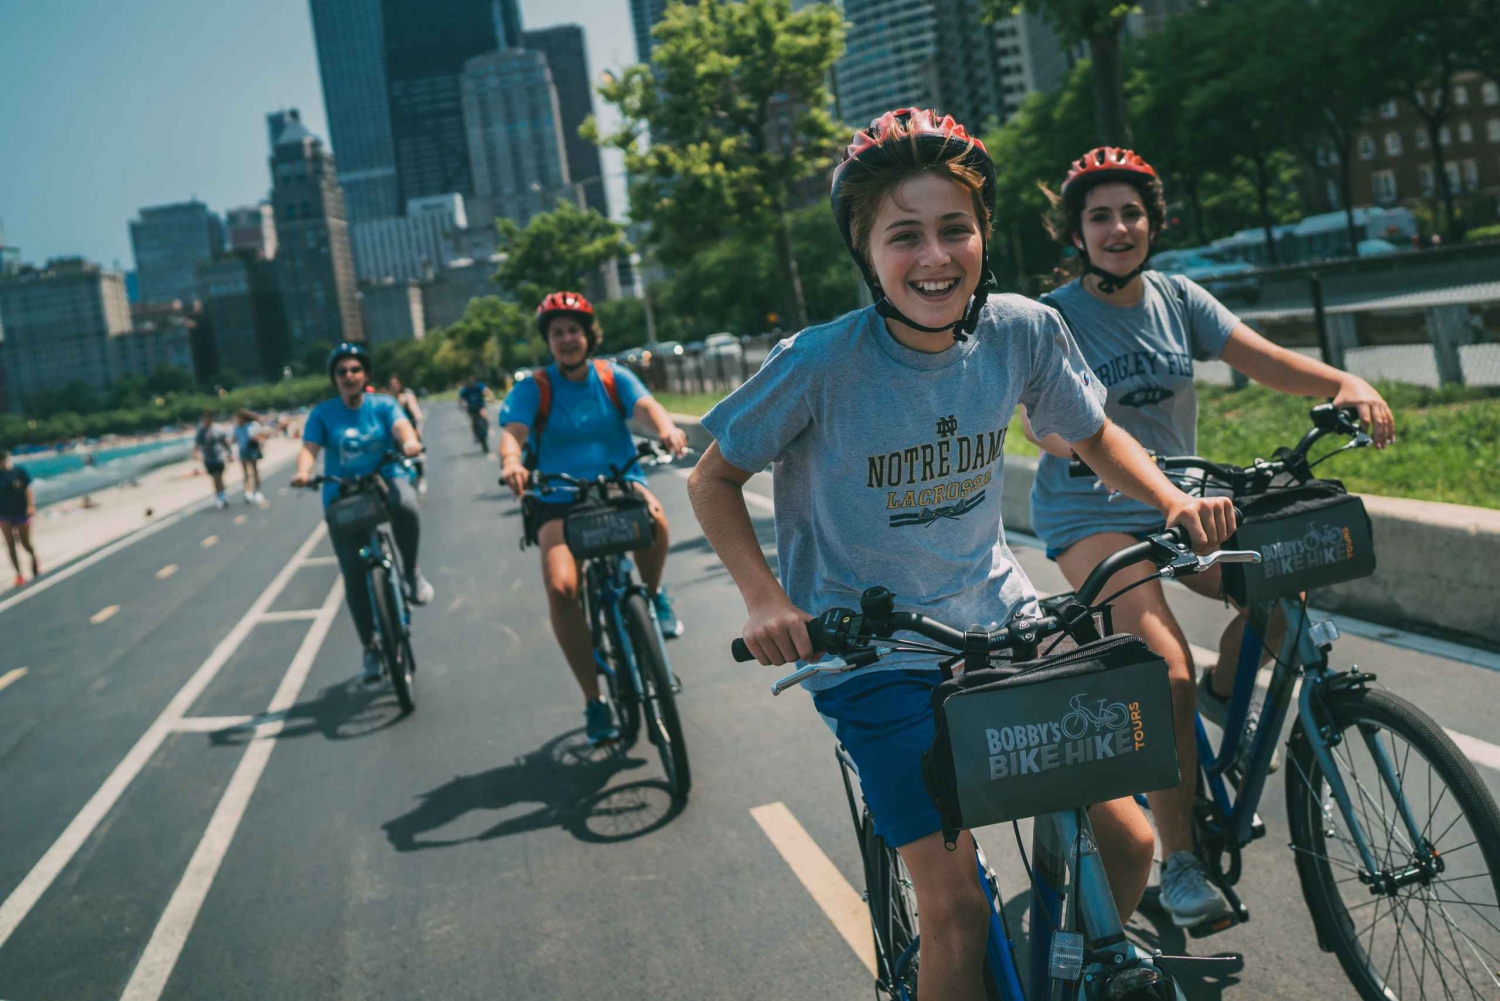 Chicago : Visite culinaire du centre-ville en famille à vélo avec visite touristique